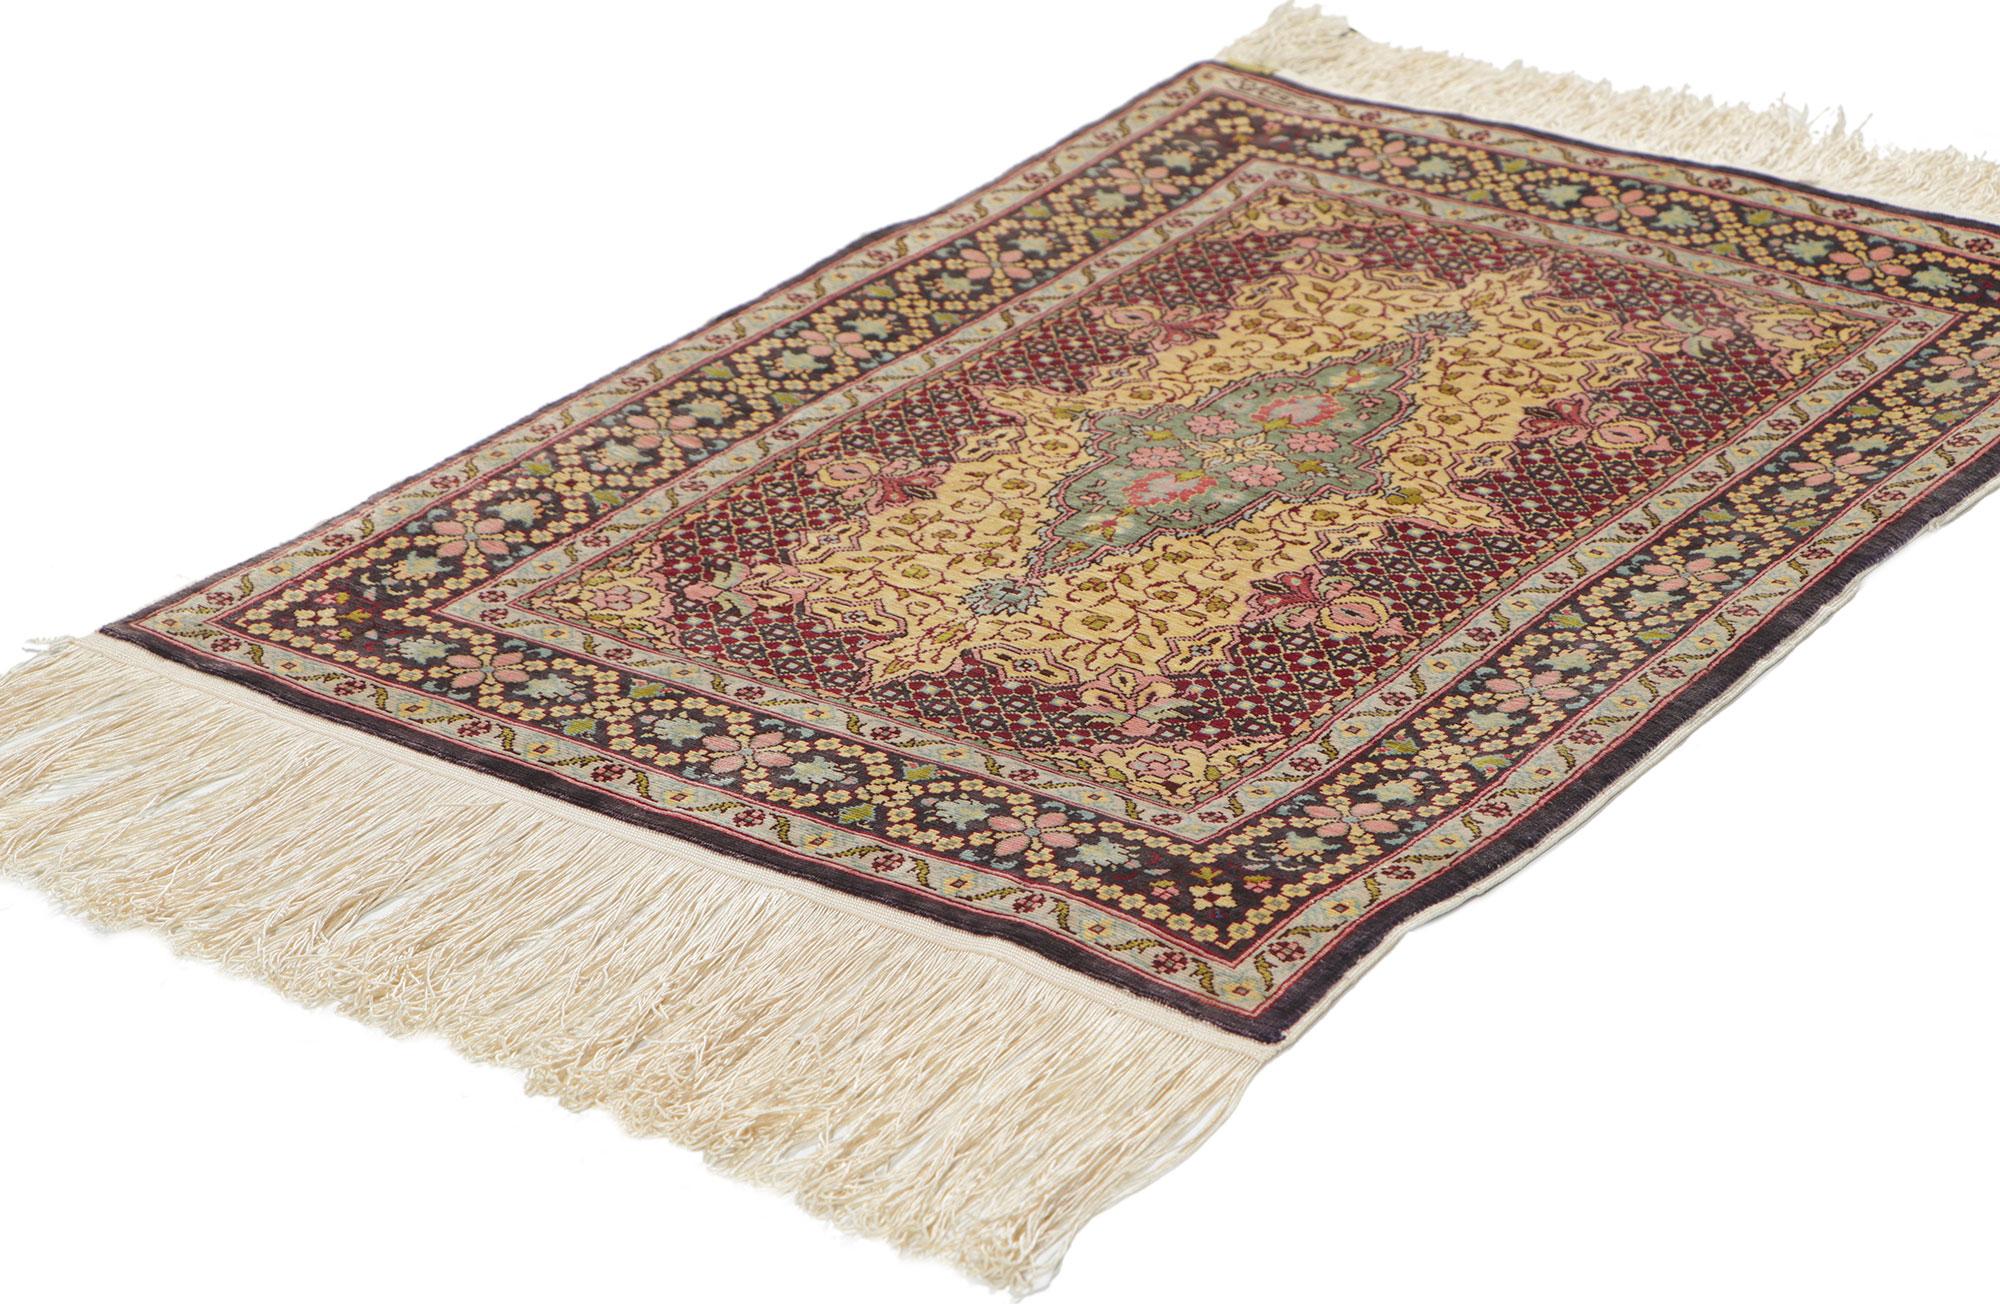 78516 Vintage Türkische Seide Hereke Teppich, 01'04 x 02'00. Dieser handgeknüpfte Hereke-Teppich aus Seide, der einen traditionellen Stil mit unglaublichen Details und Texturen ausstrahlt, ist eine fesselnde Vision gewebter Schönheit. Das zeitlose